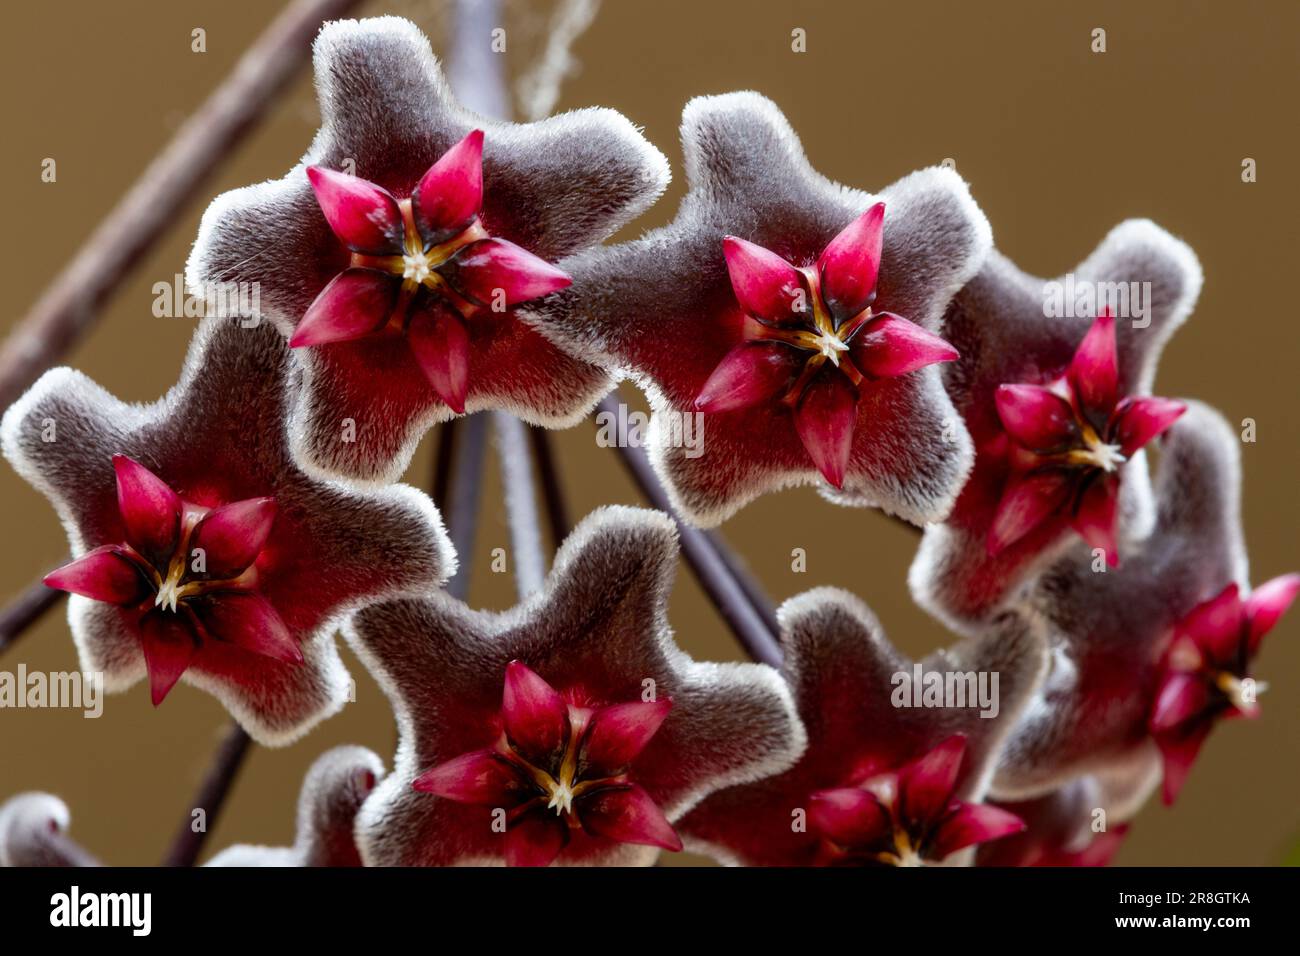 Flower of a Honeywort (Hoya pubicalyx) Stock Photo